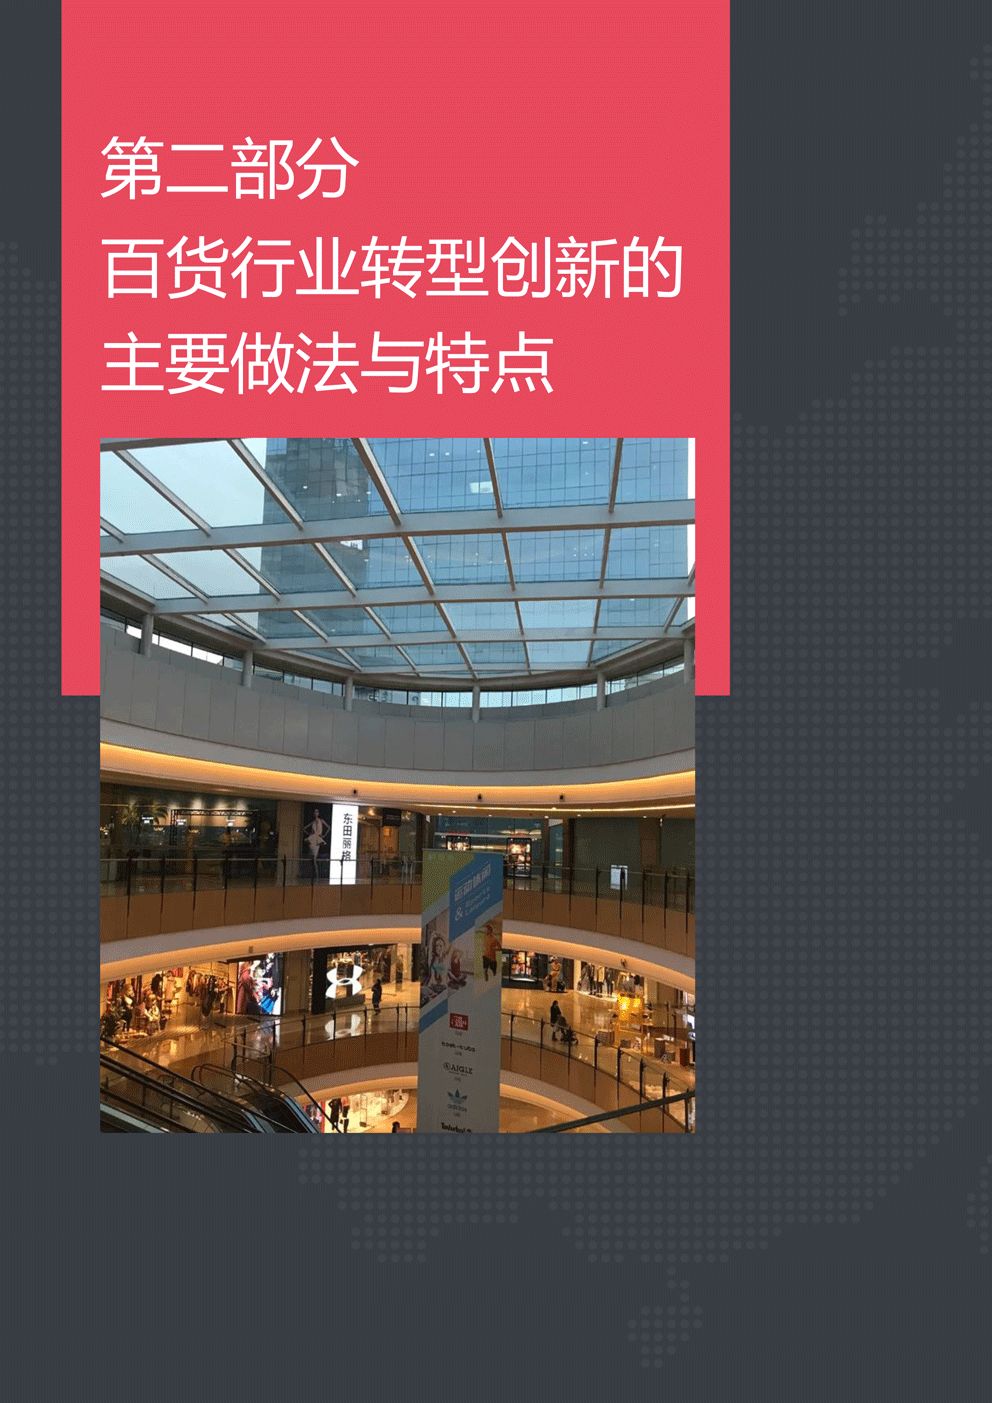 2019中国零售业排行_2019年中国零售业发展预测